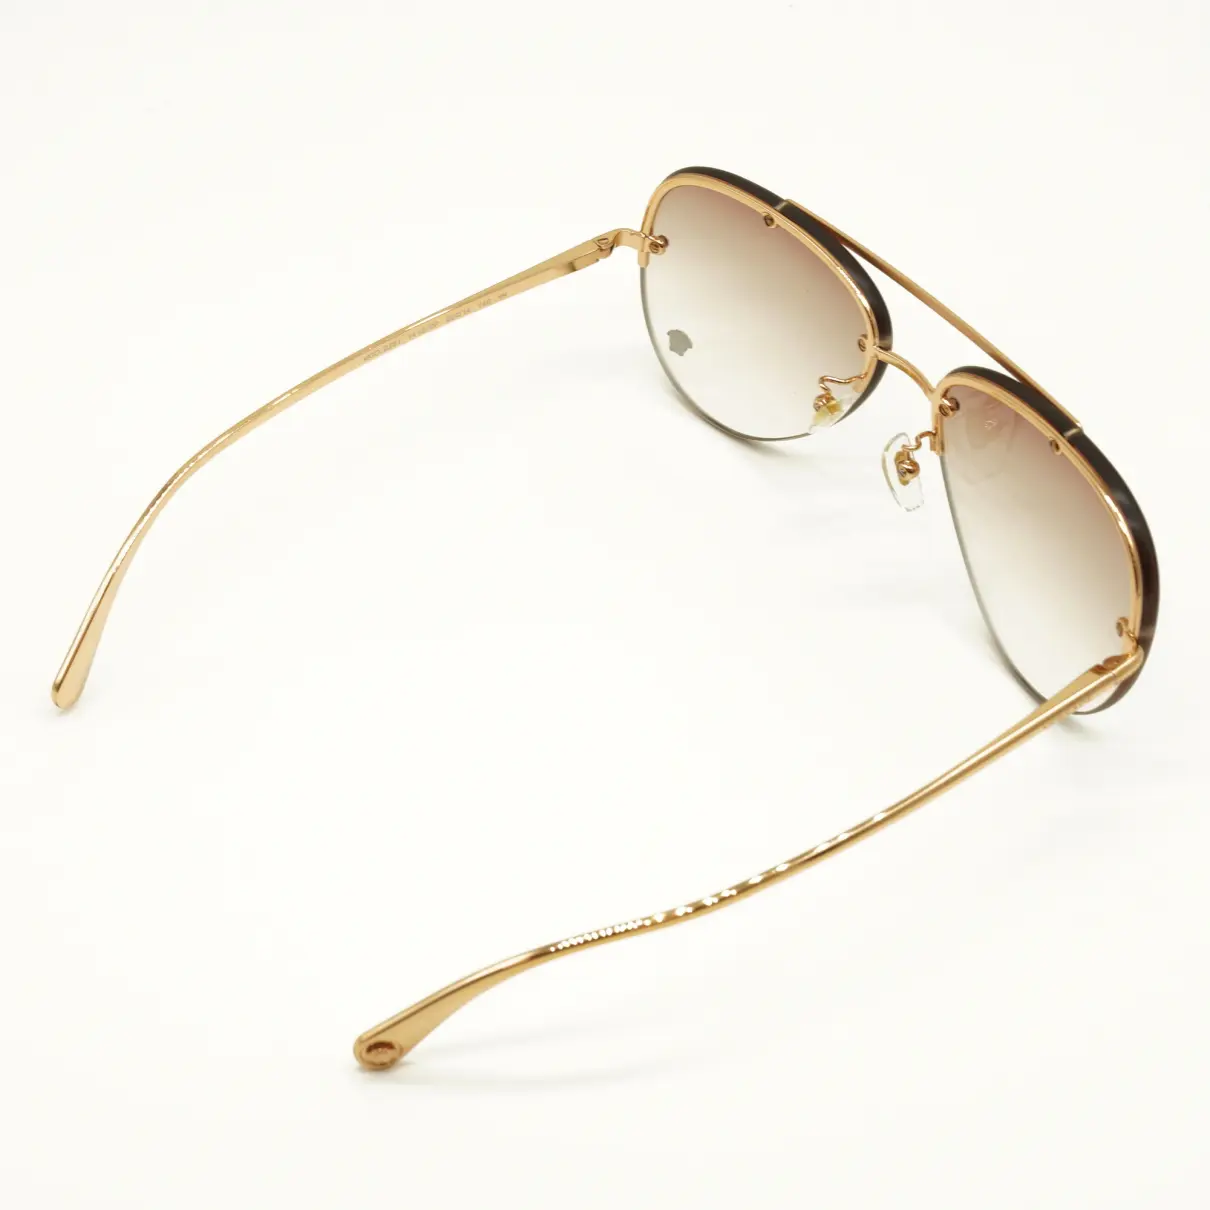 Luxury Versace Sunglasses Women